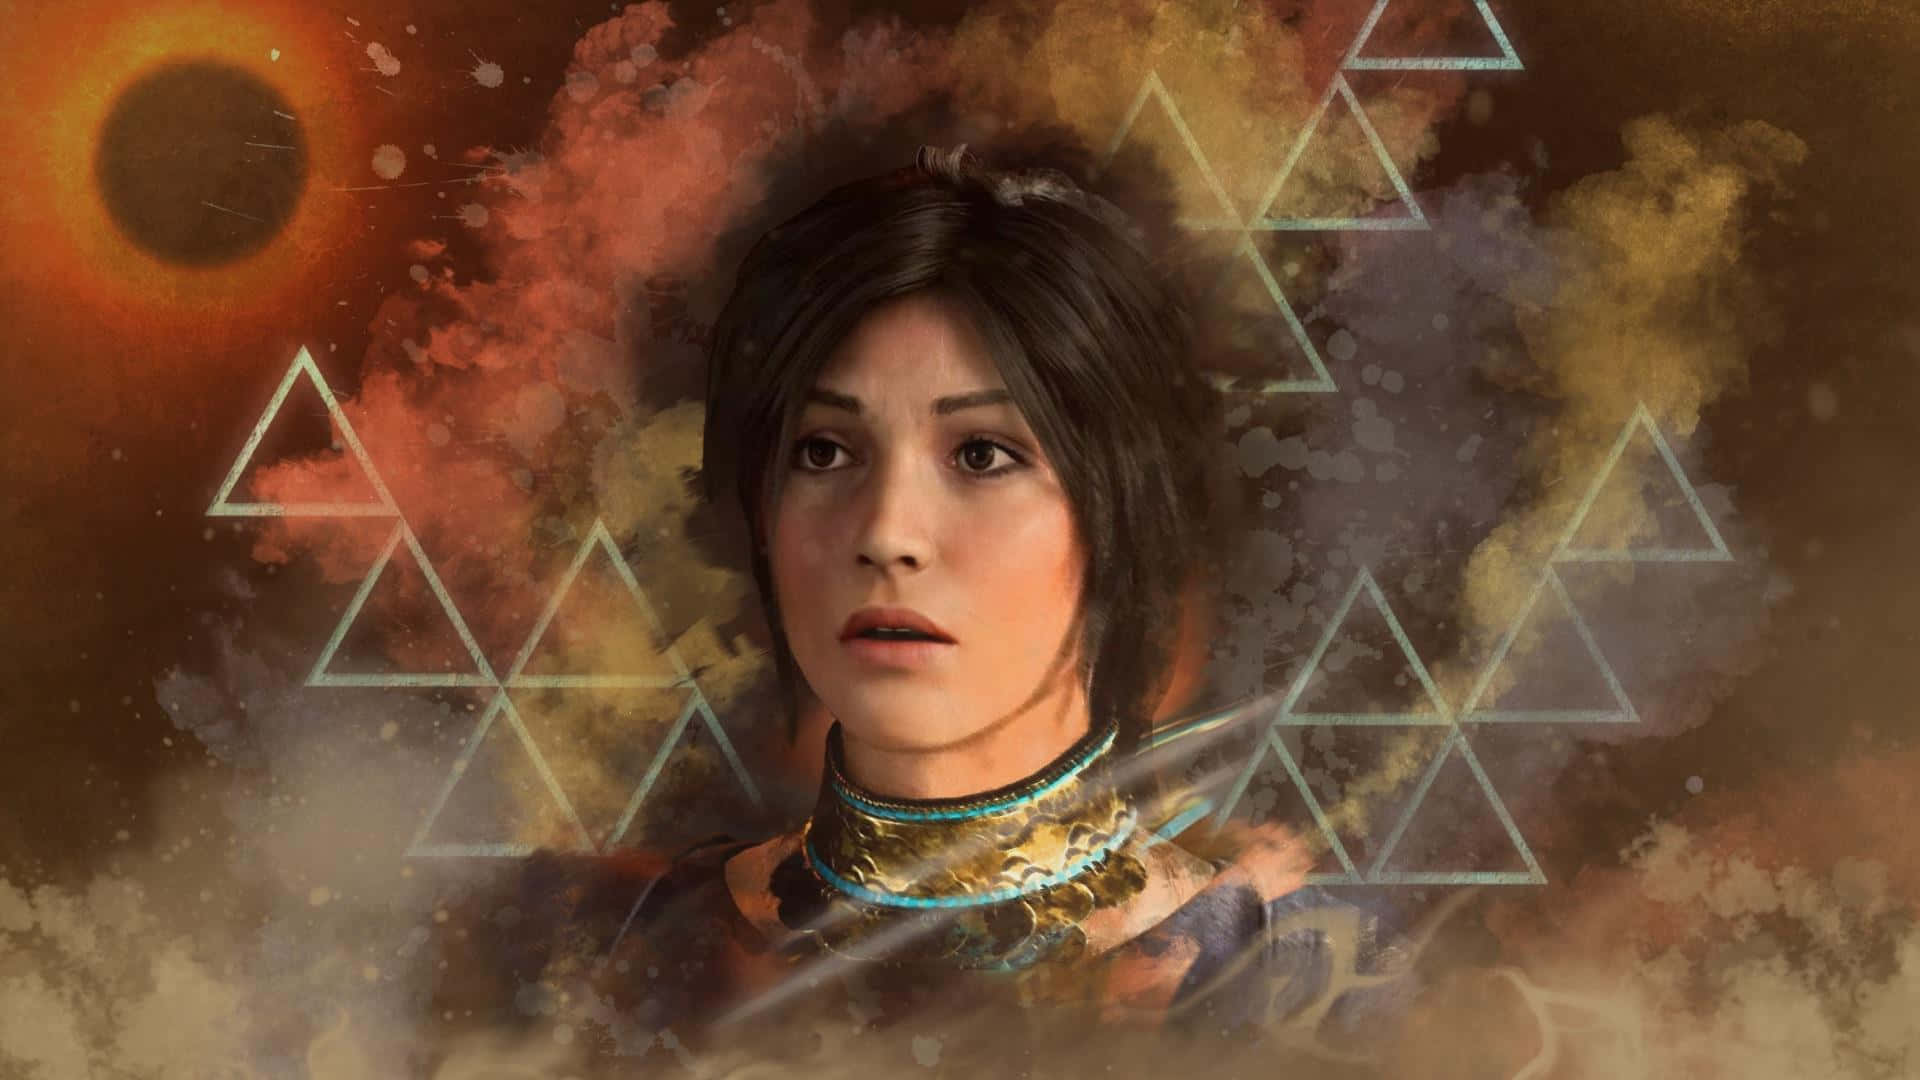 Triangelformadförmörkelse Är Den Bästa Bakgrunden För Shadow Of The Tomb Raider.